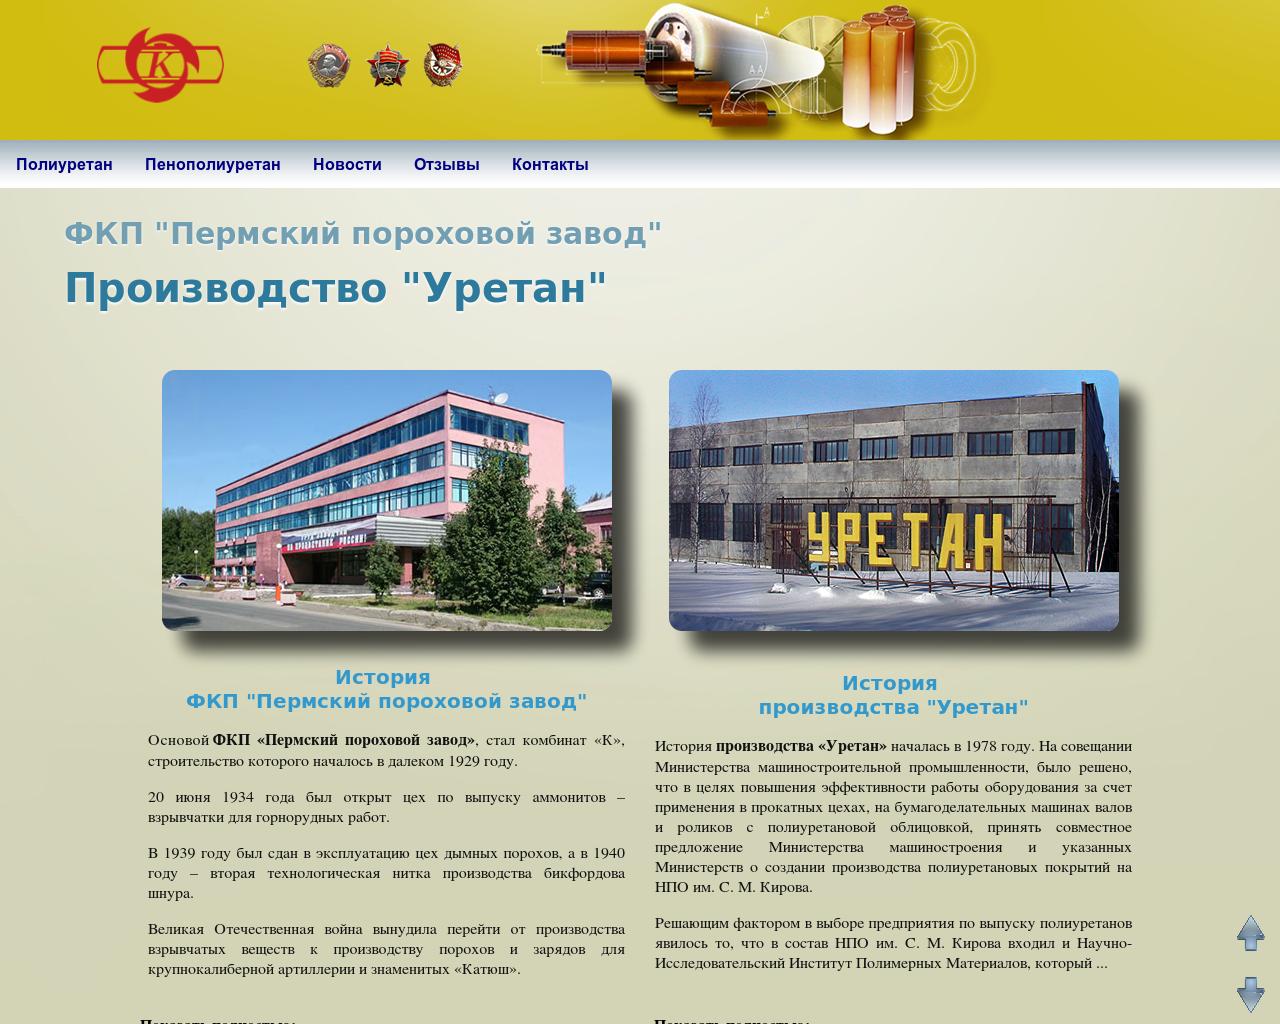 Изображение сайта uretan.ru в разрешении 1280x1024